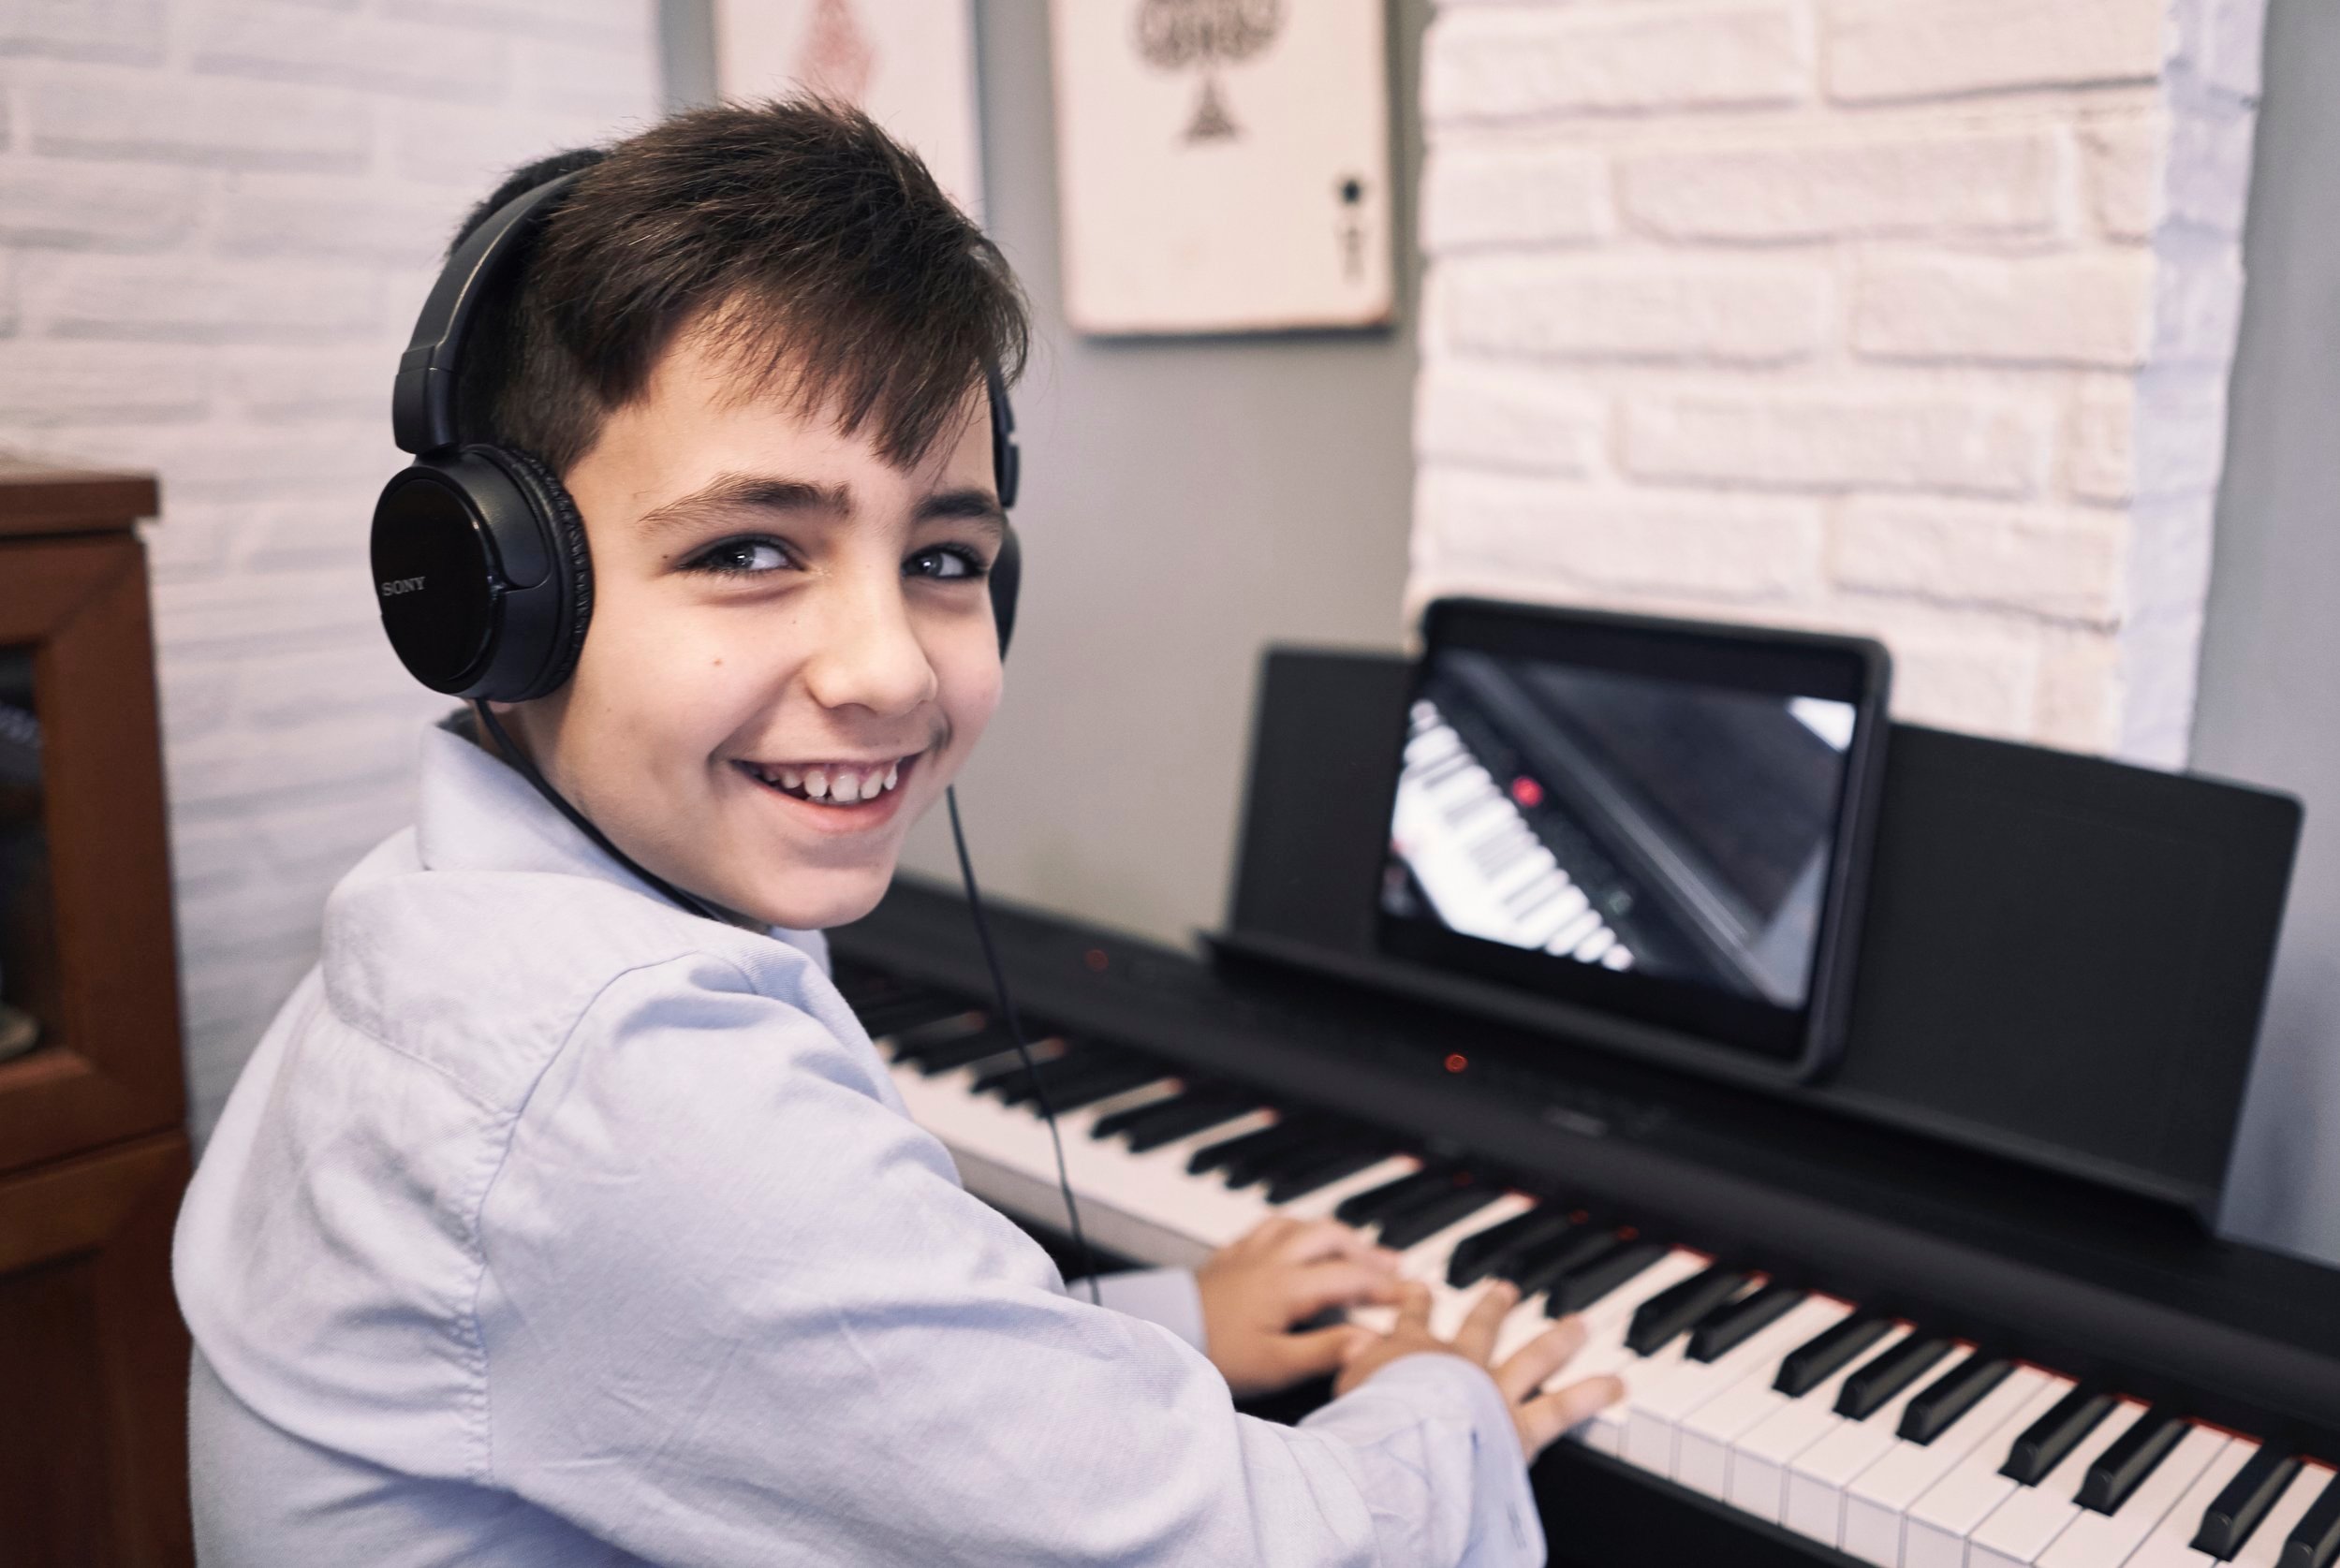 Online Piano Games - The Piano Studio